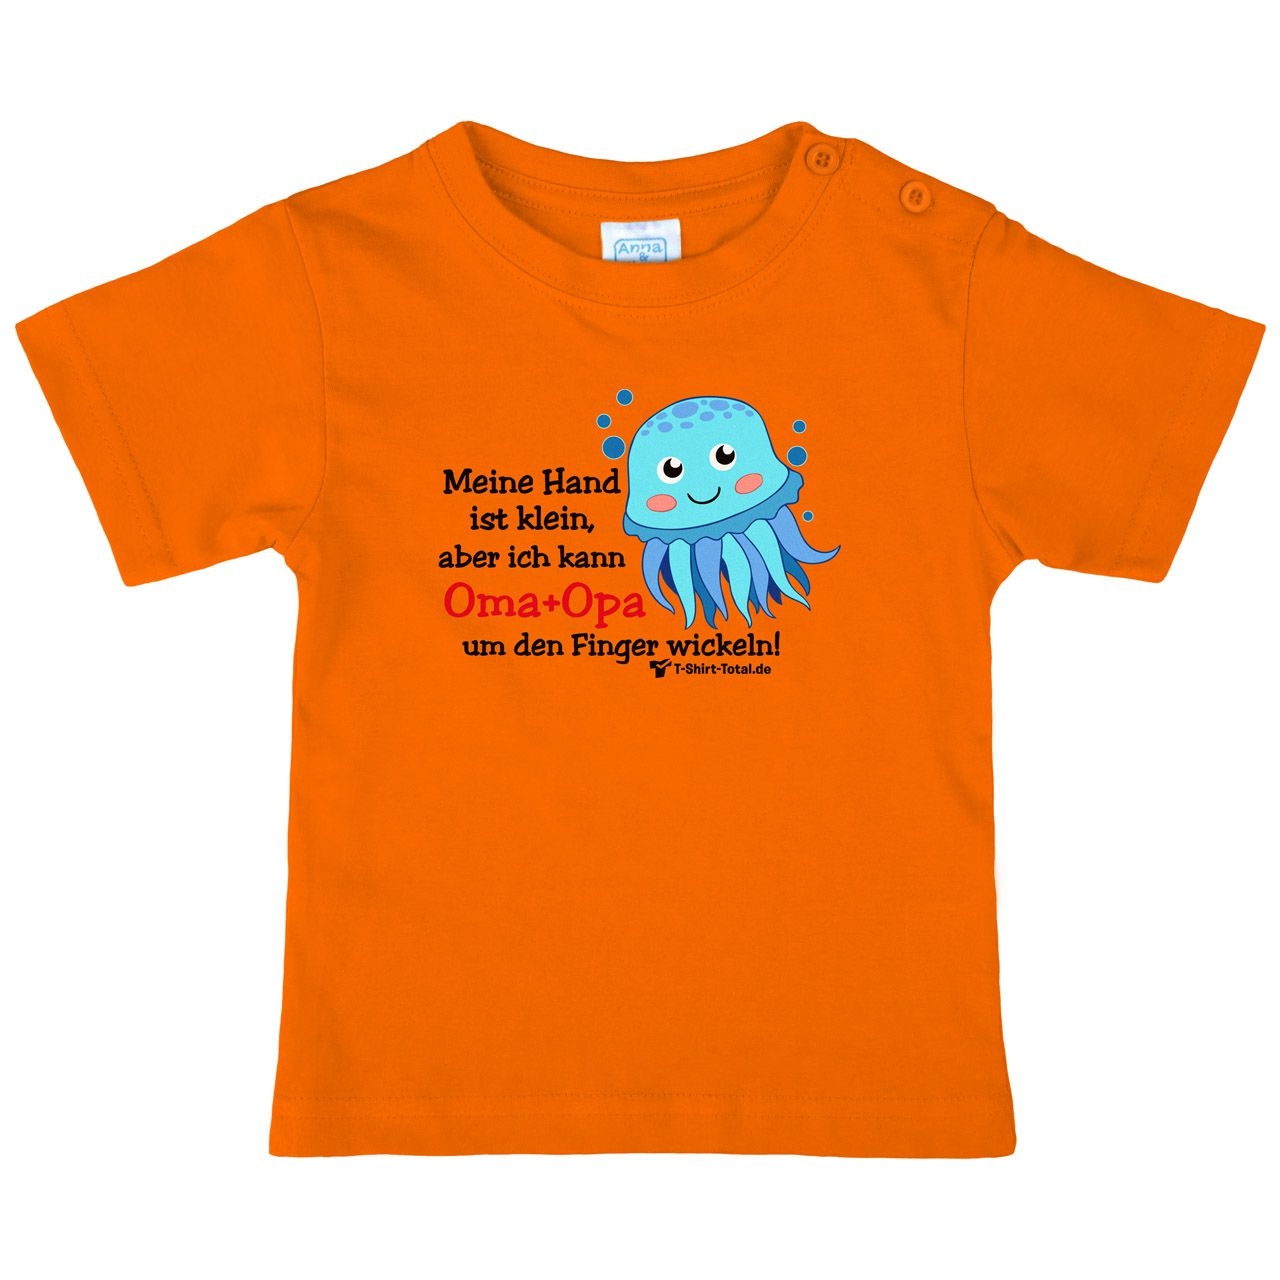 Kleine Hand Oma Opa Octopus Kinder T-Shirt orange 68 / 74